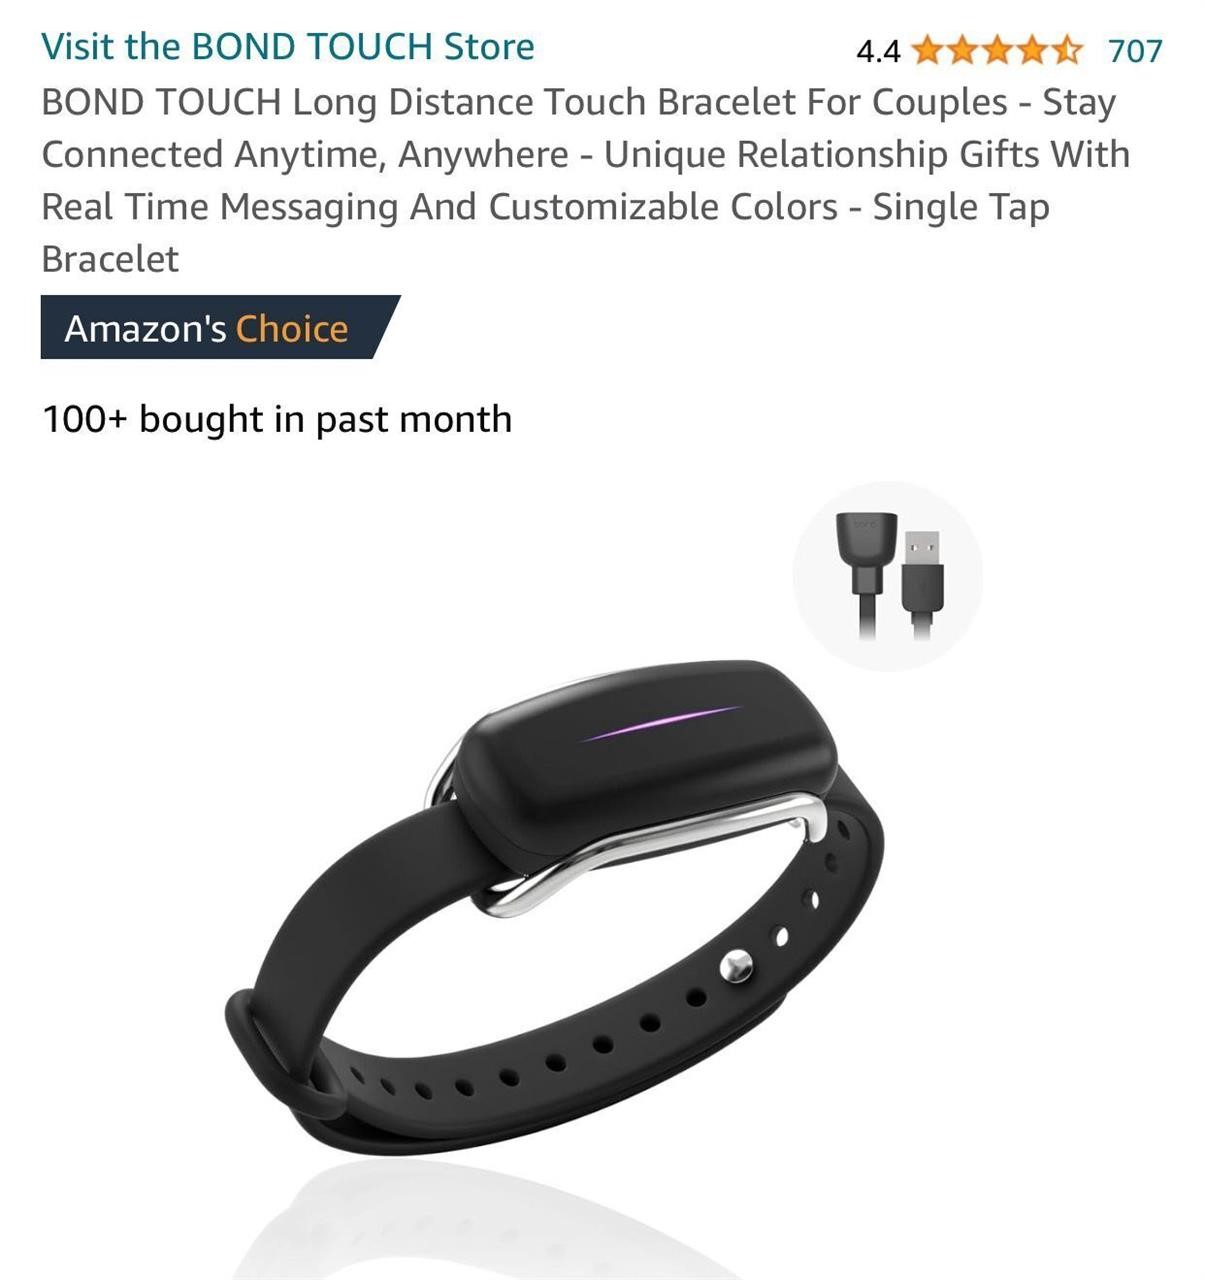 BOND TOUCH Long Distance Touch Bracelet